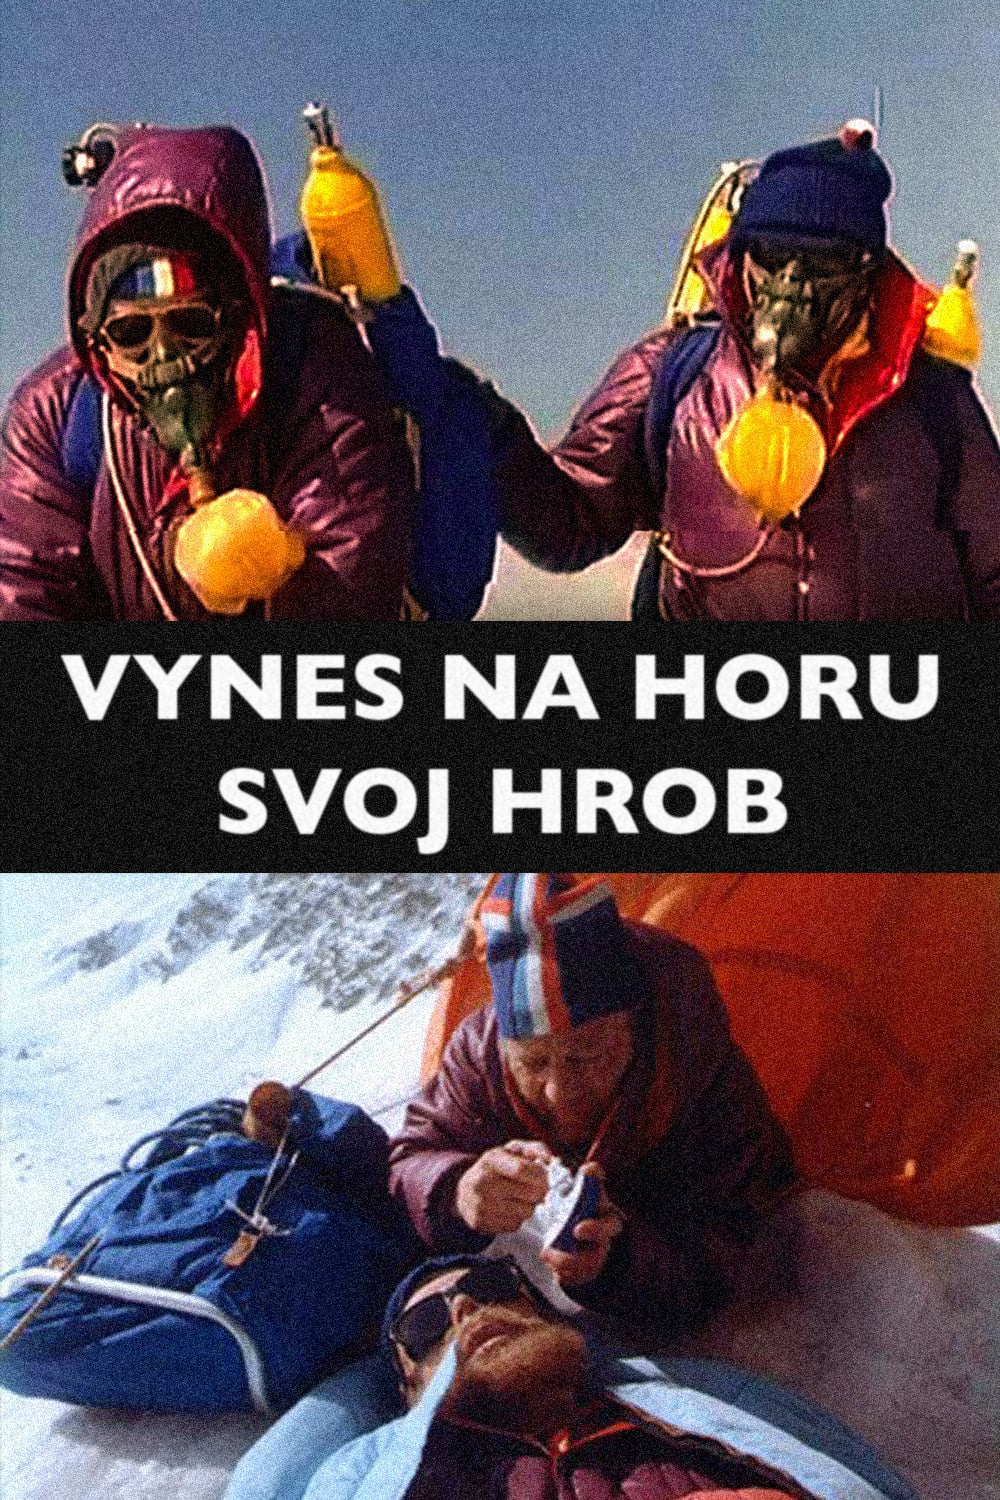 Stiahni si Filmy CZ/SK dabing Vynes na horu svoj hrob(1976)(SK)[TvRip] = CSFD 72%